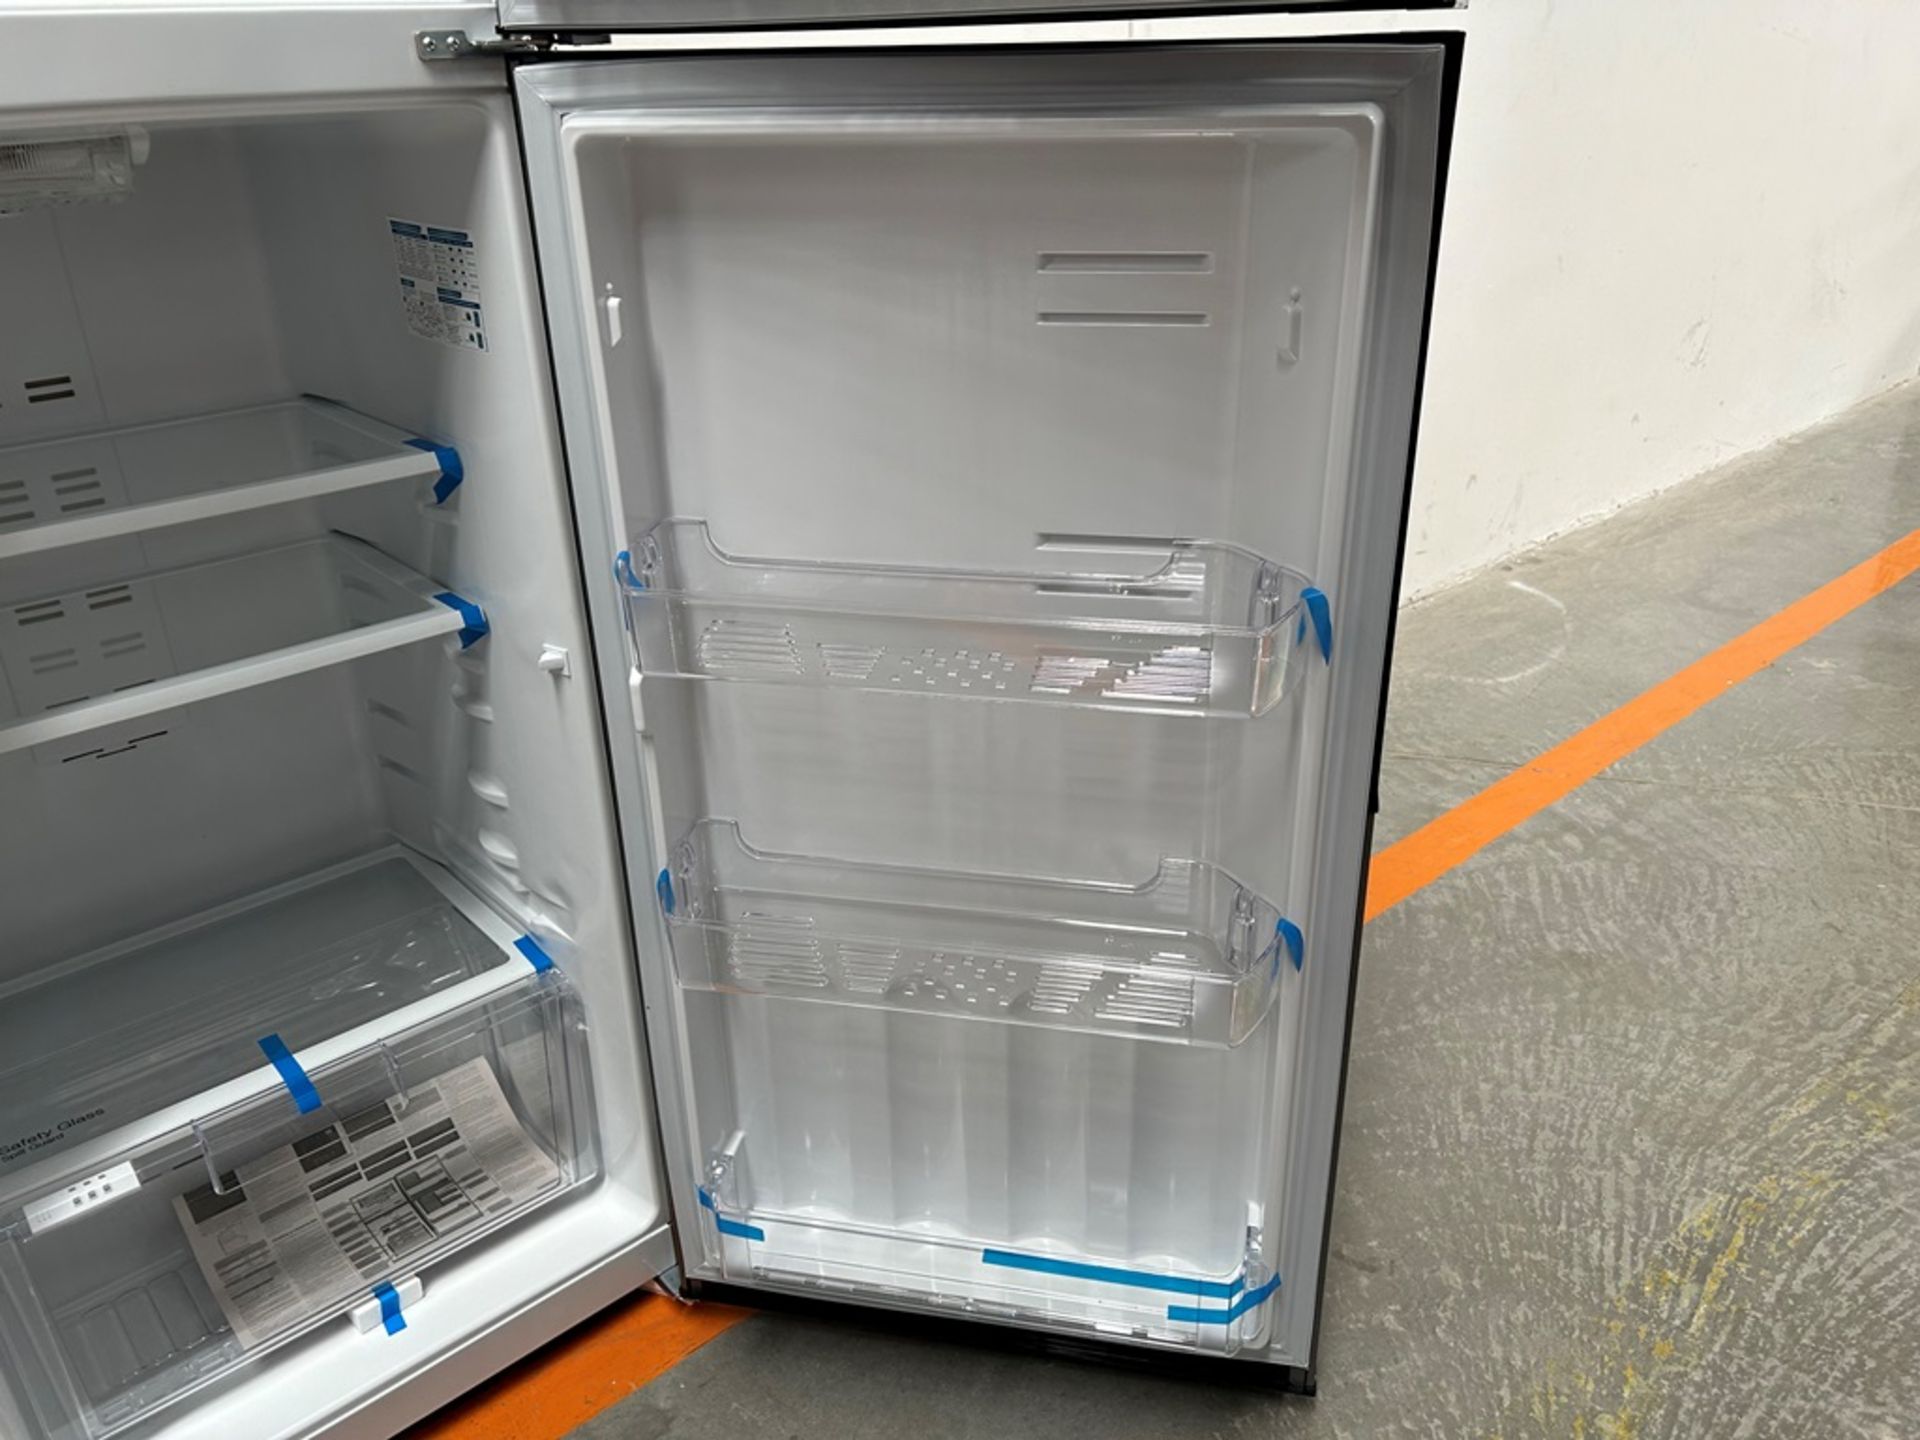 Lote de 2 refrigeradores contiene:1 refrigerador Marca MABE, Modelo RMS400IVMRMA, Serie 03009, Colo - Image 8 of 18